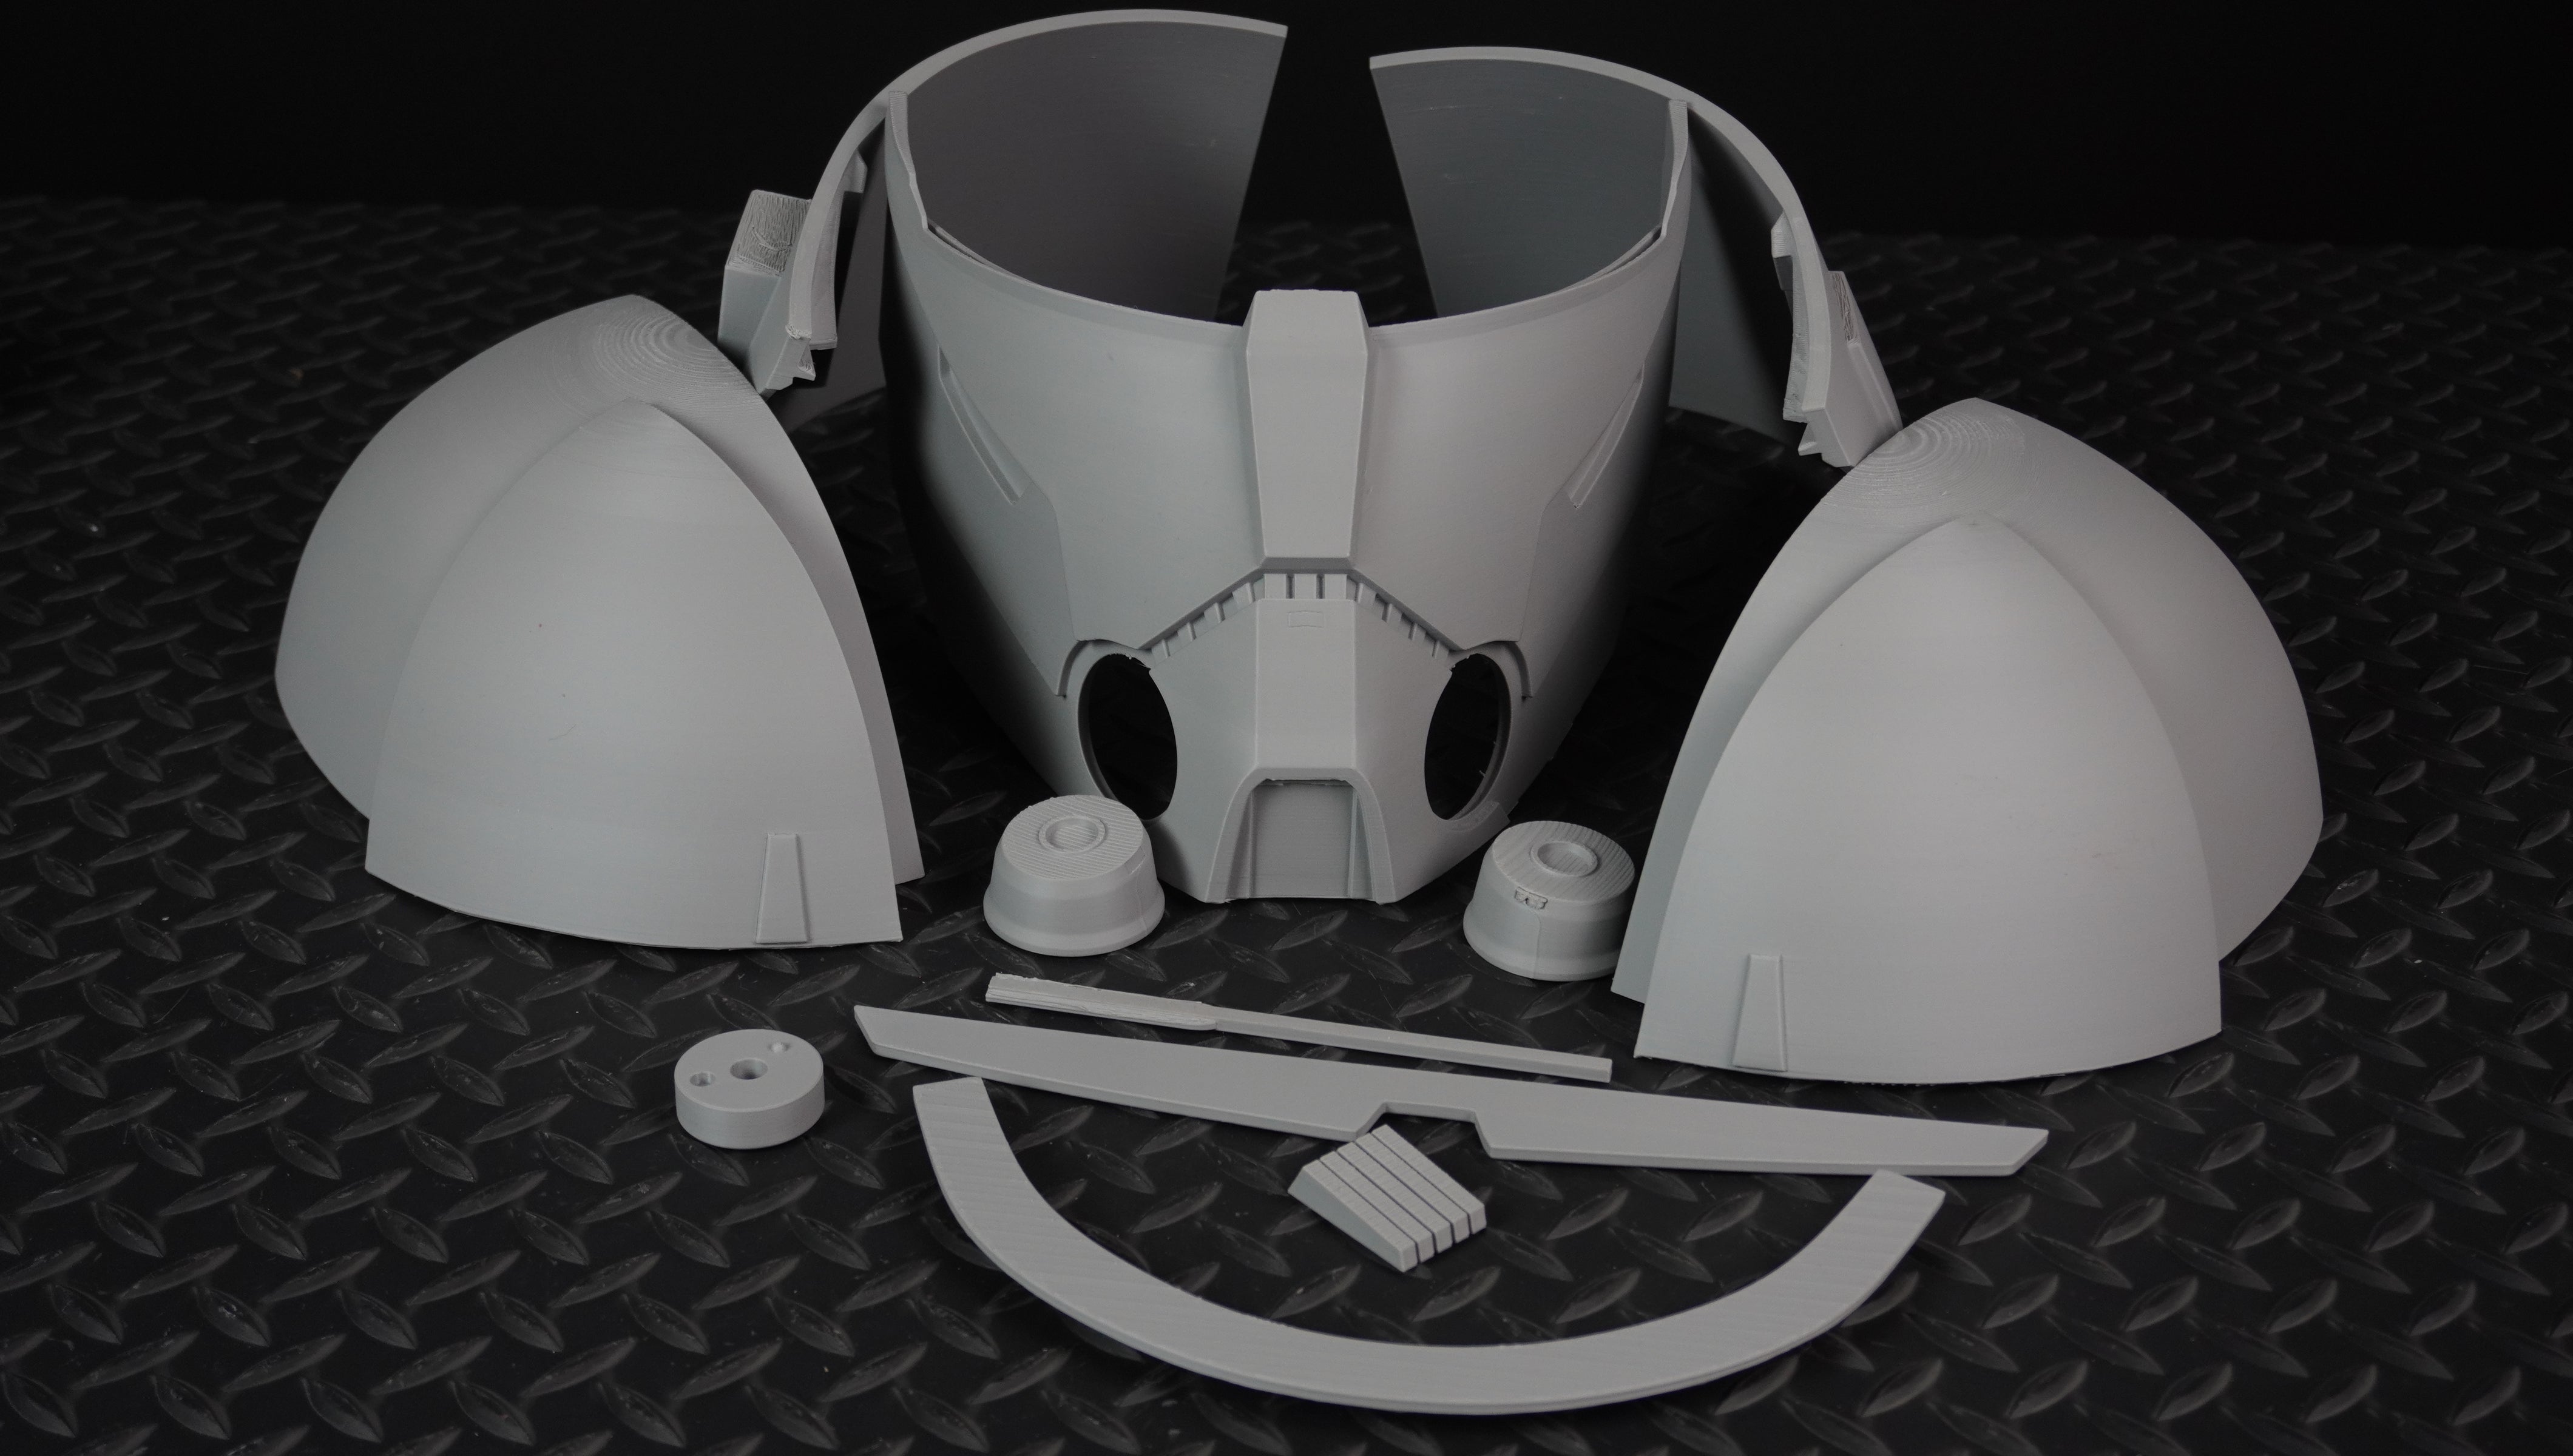 Desert Wolffe Clone Trooper Helmet - DIY - Galactic Armory